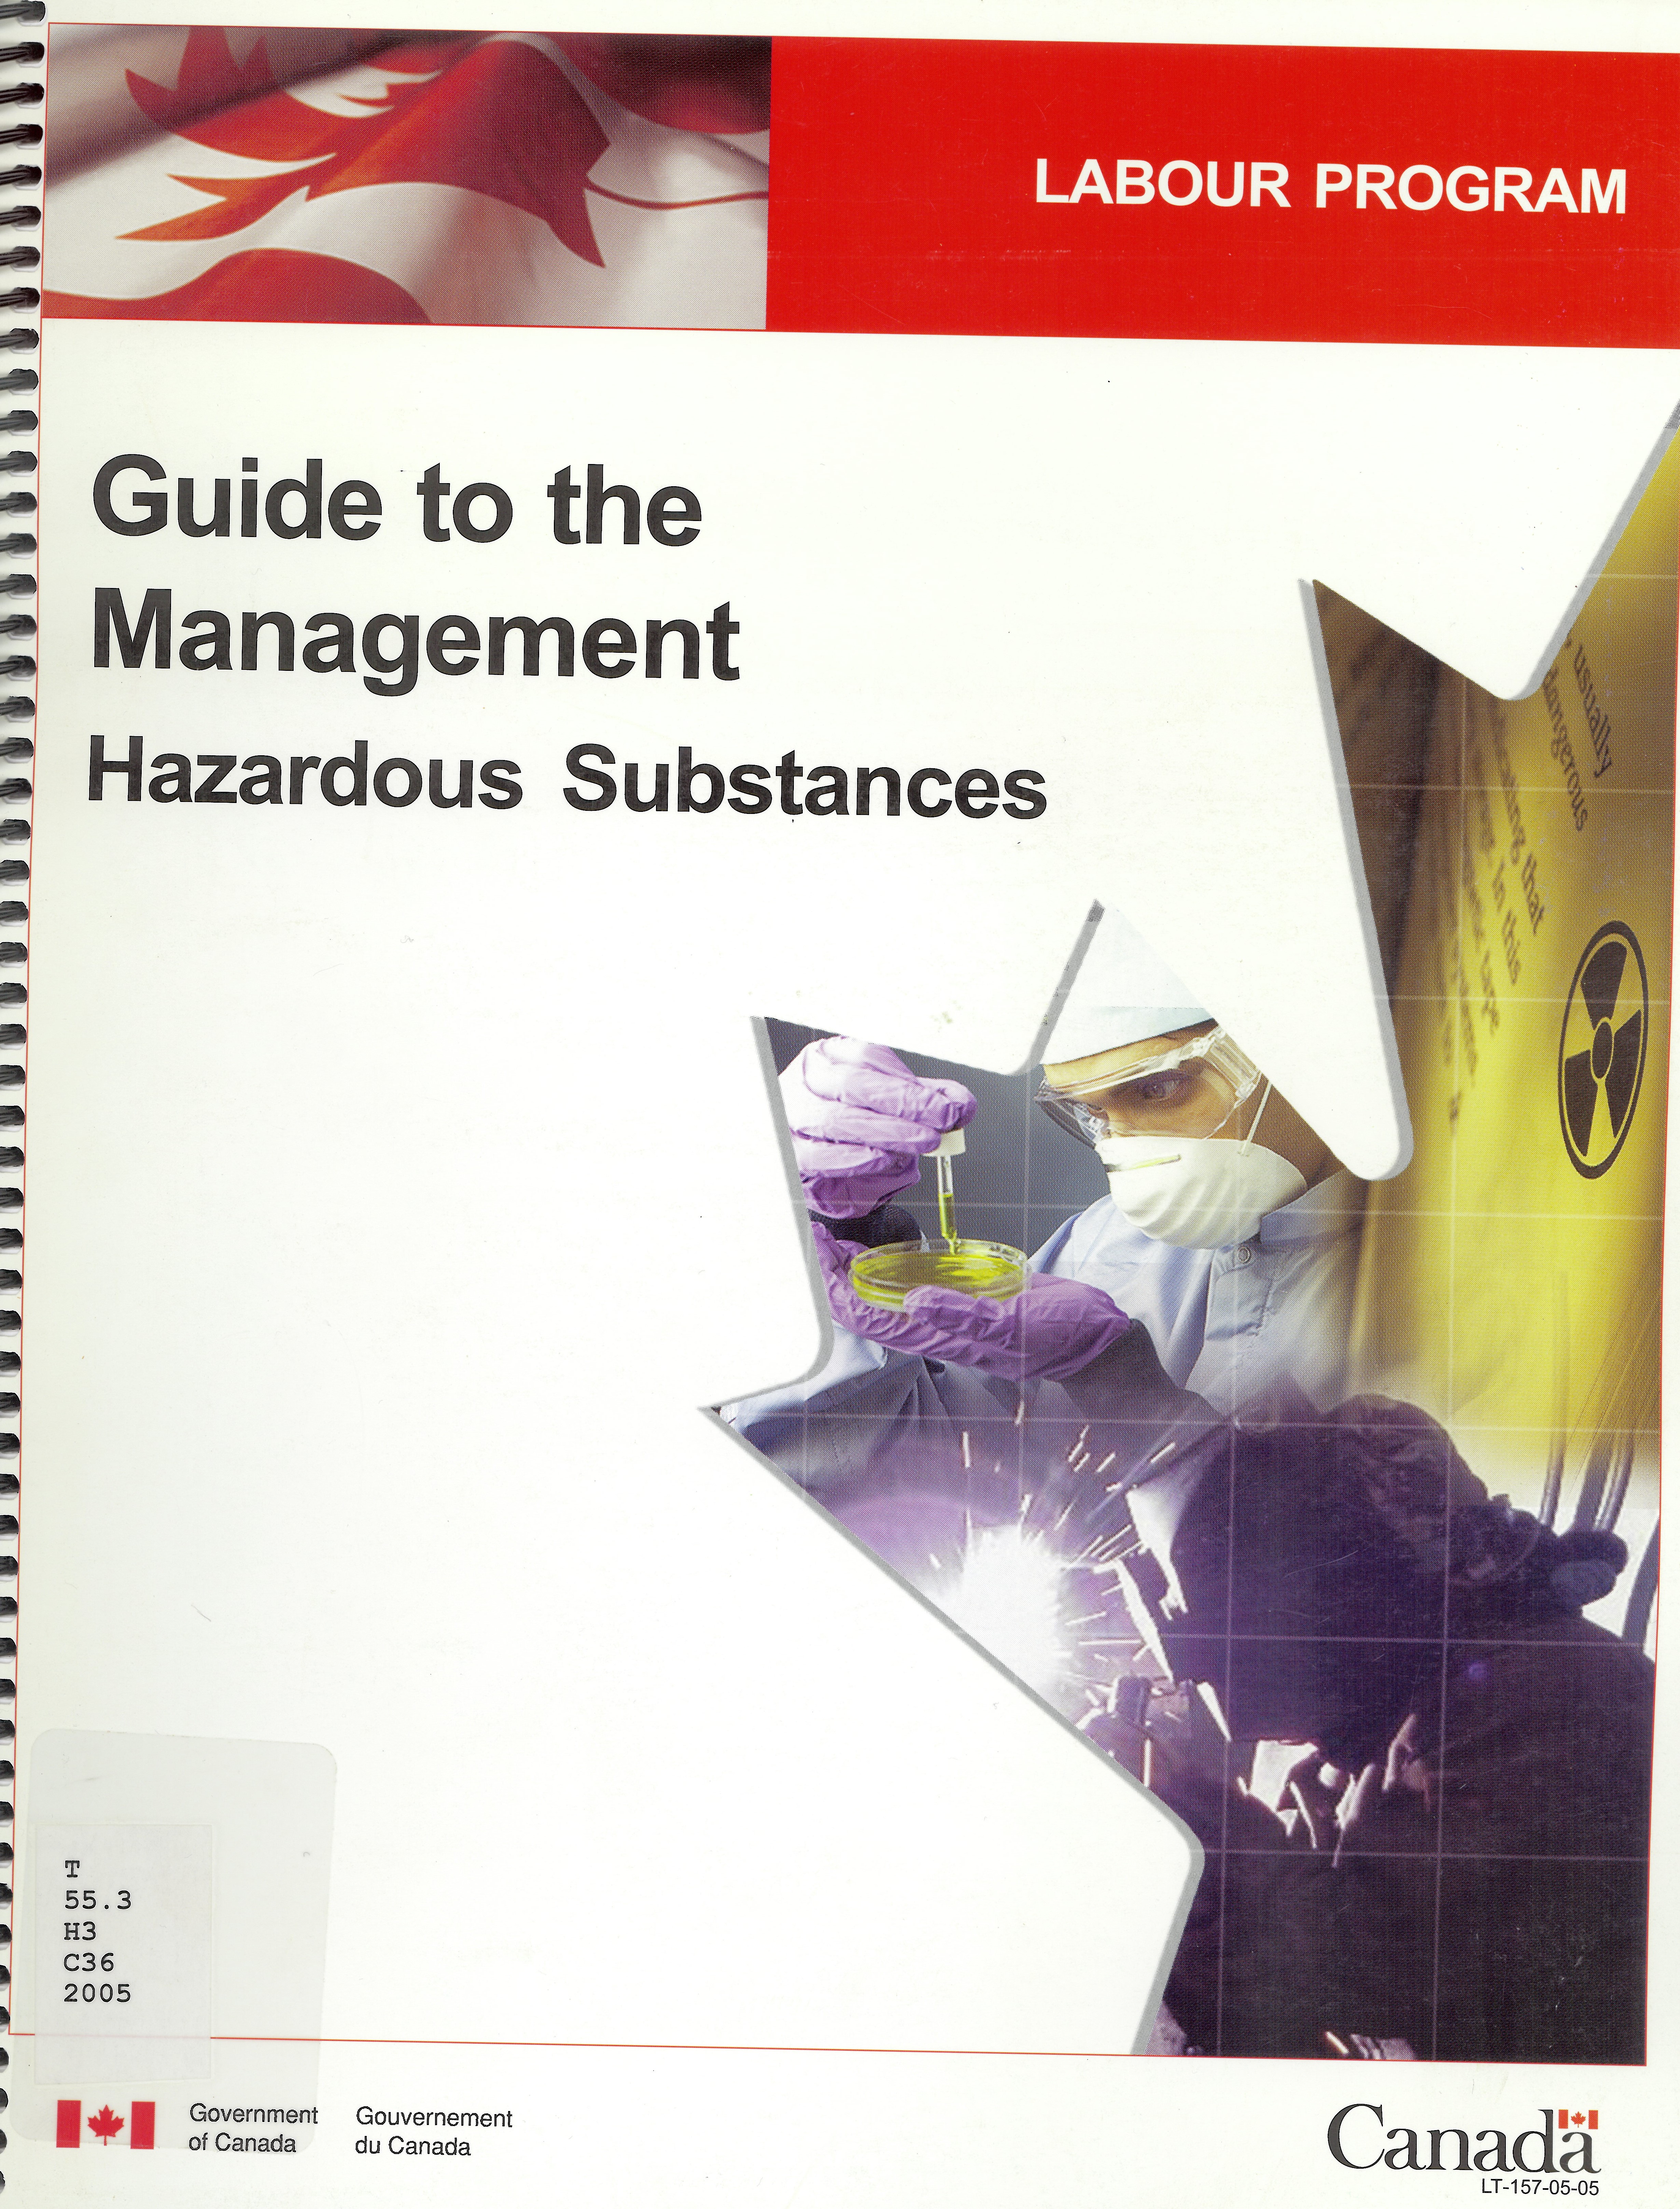 Guide to the management : hazardous substances.